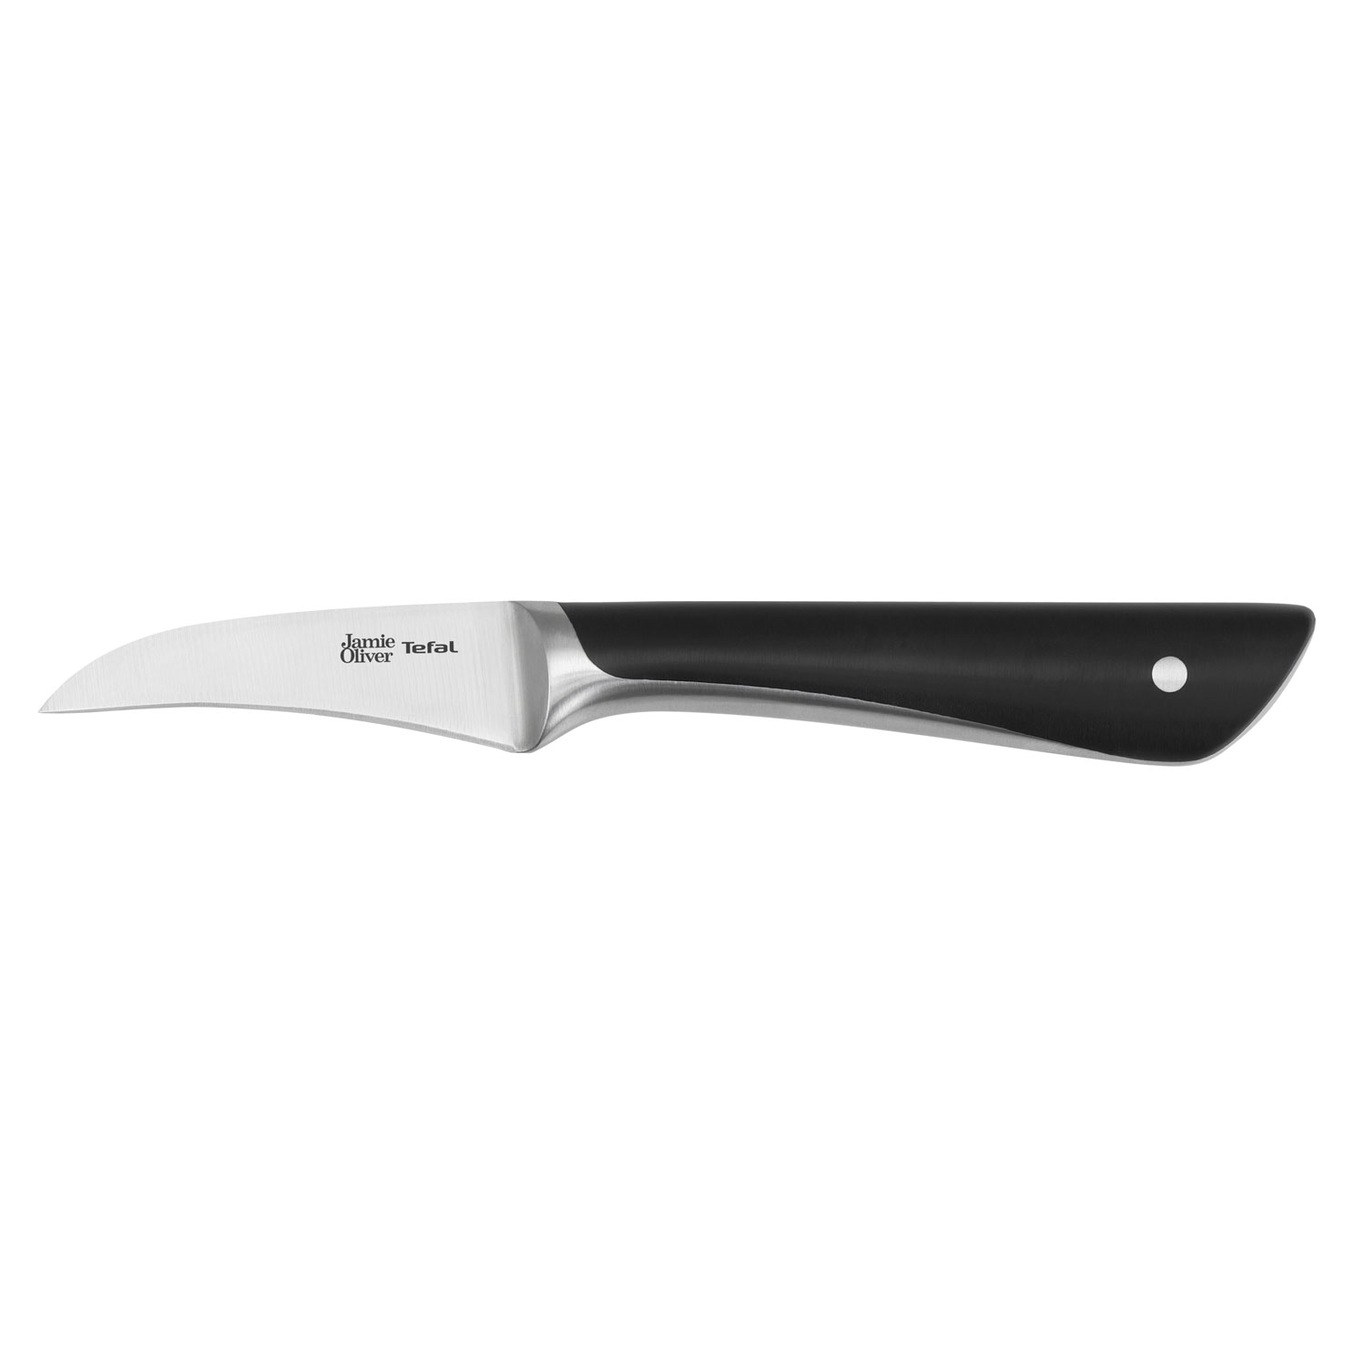 Jamie Oliver Knife, 7 cm